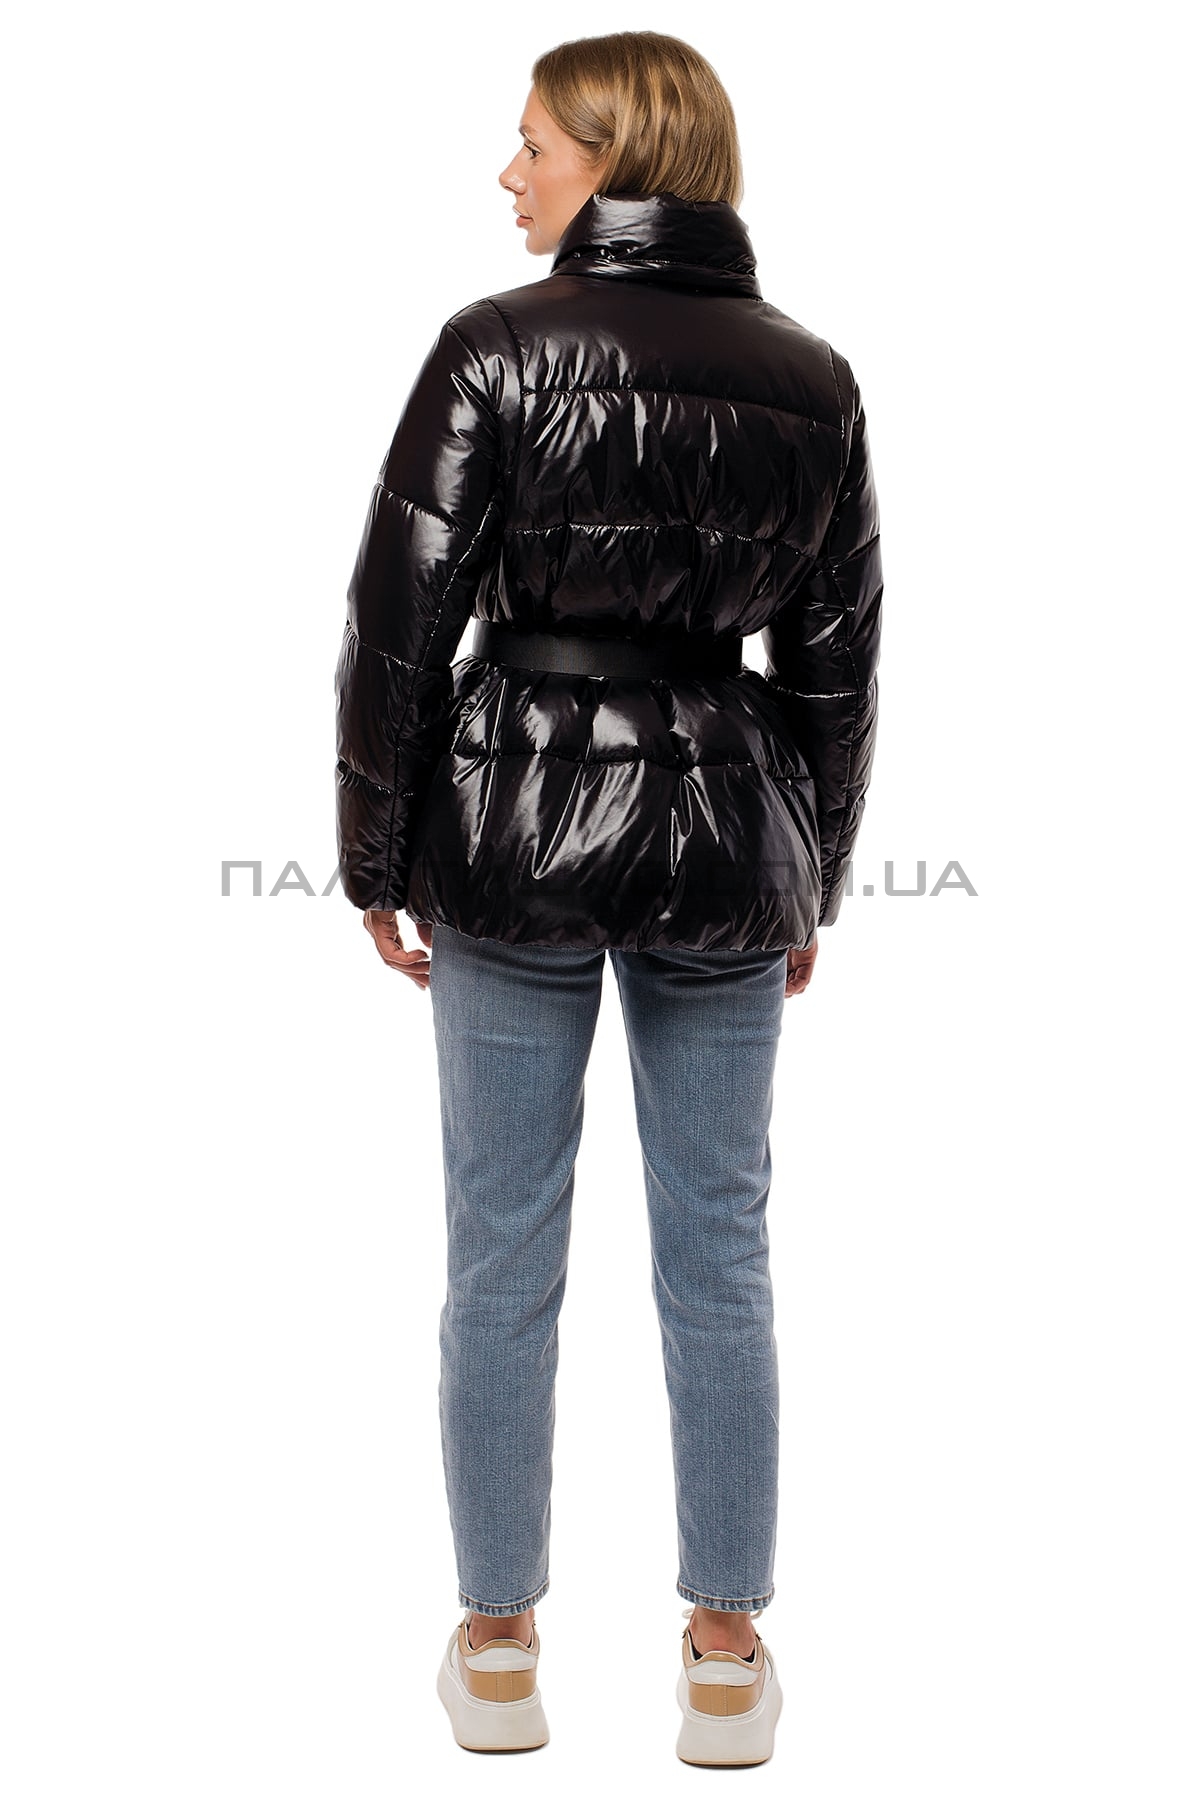  Женкская зимняя куртка черная с поясом